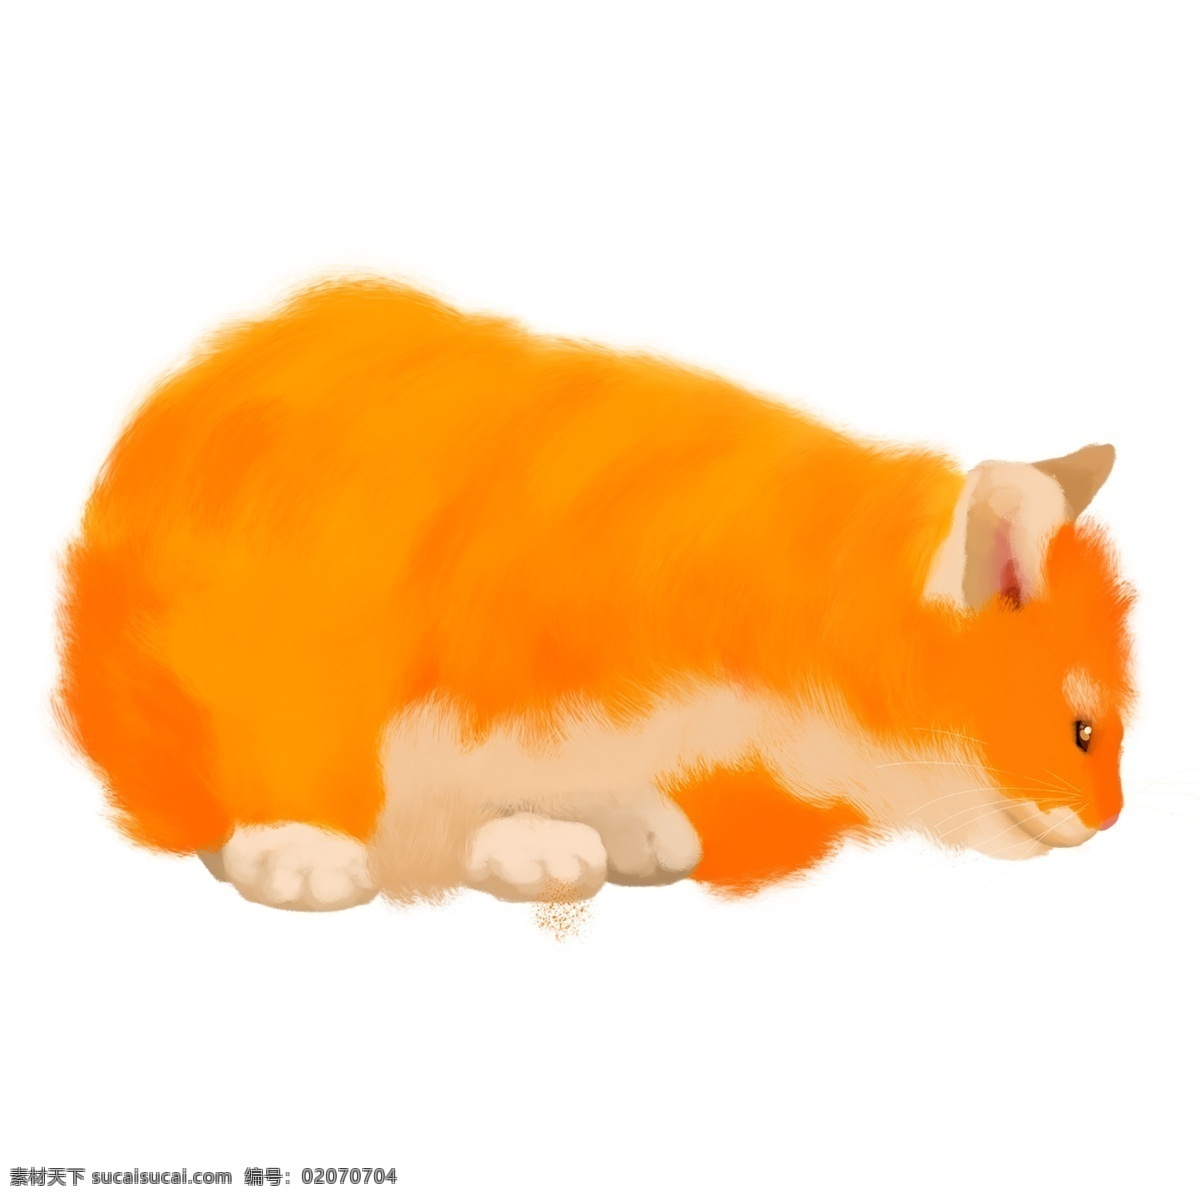 可爱 毛茸茸 宠物 橘 猫 手绘 猫咪 动物素材 手绘素材 毛茸茸的 橘猫